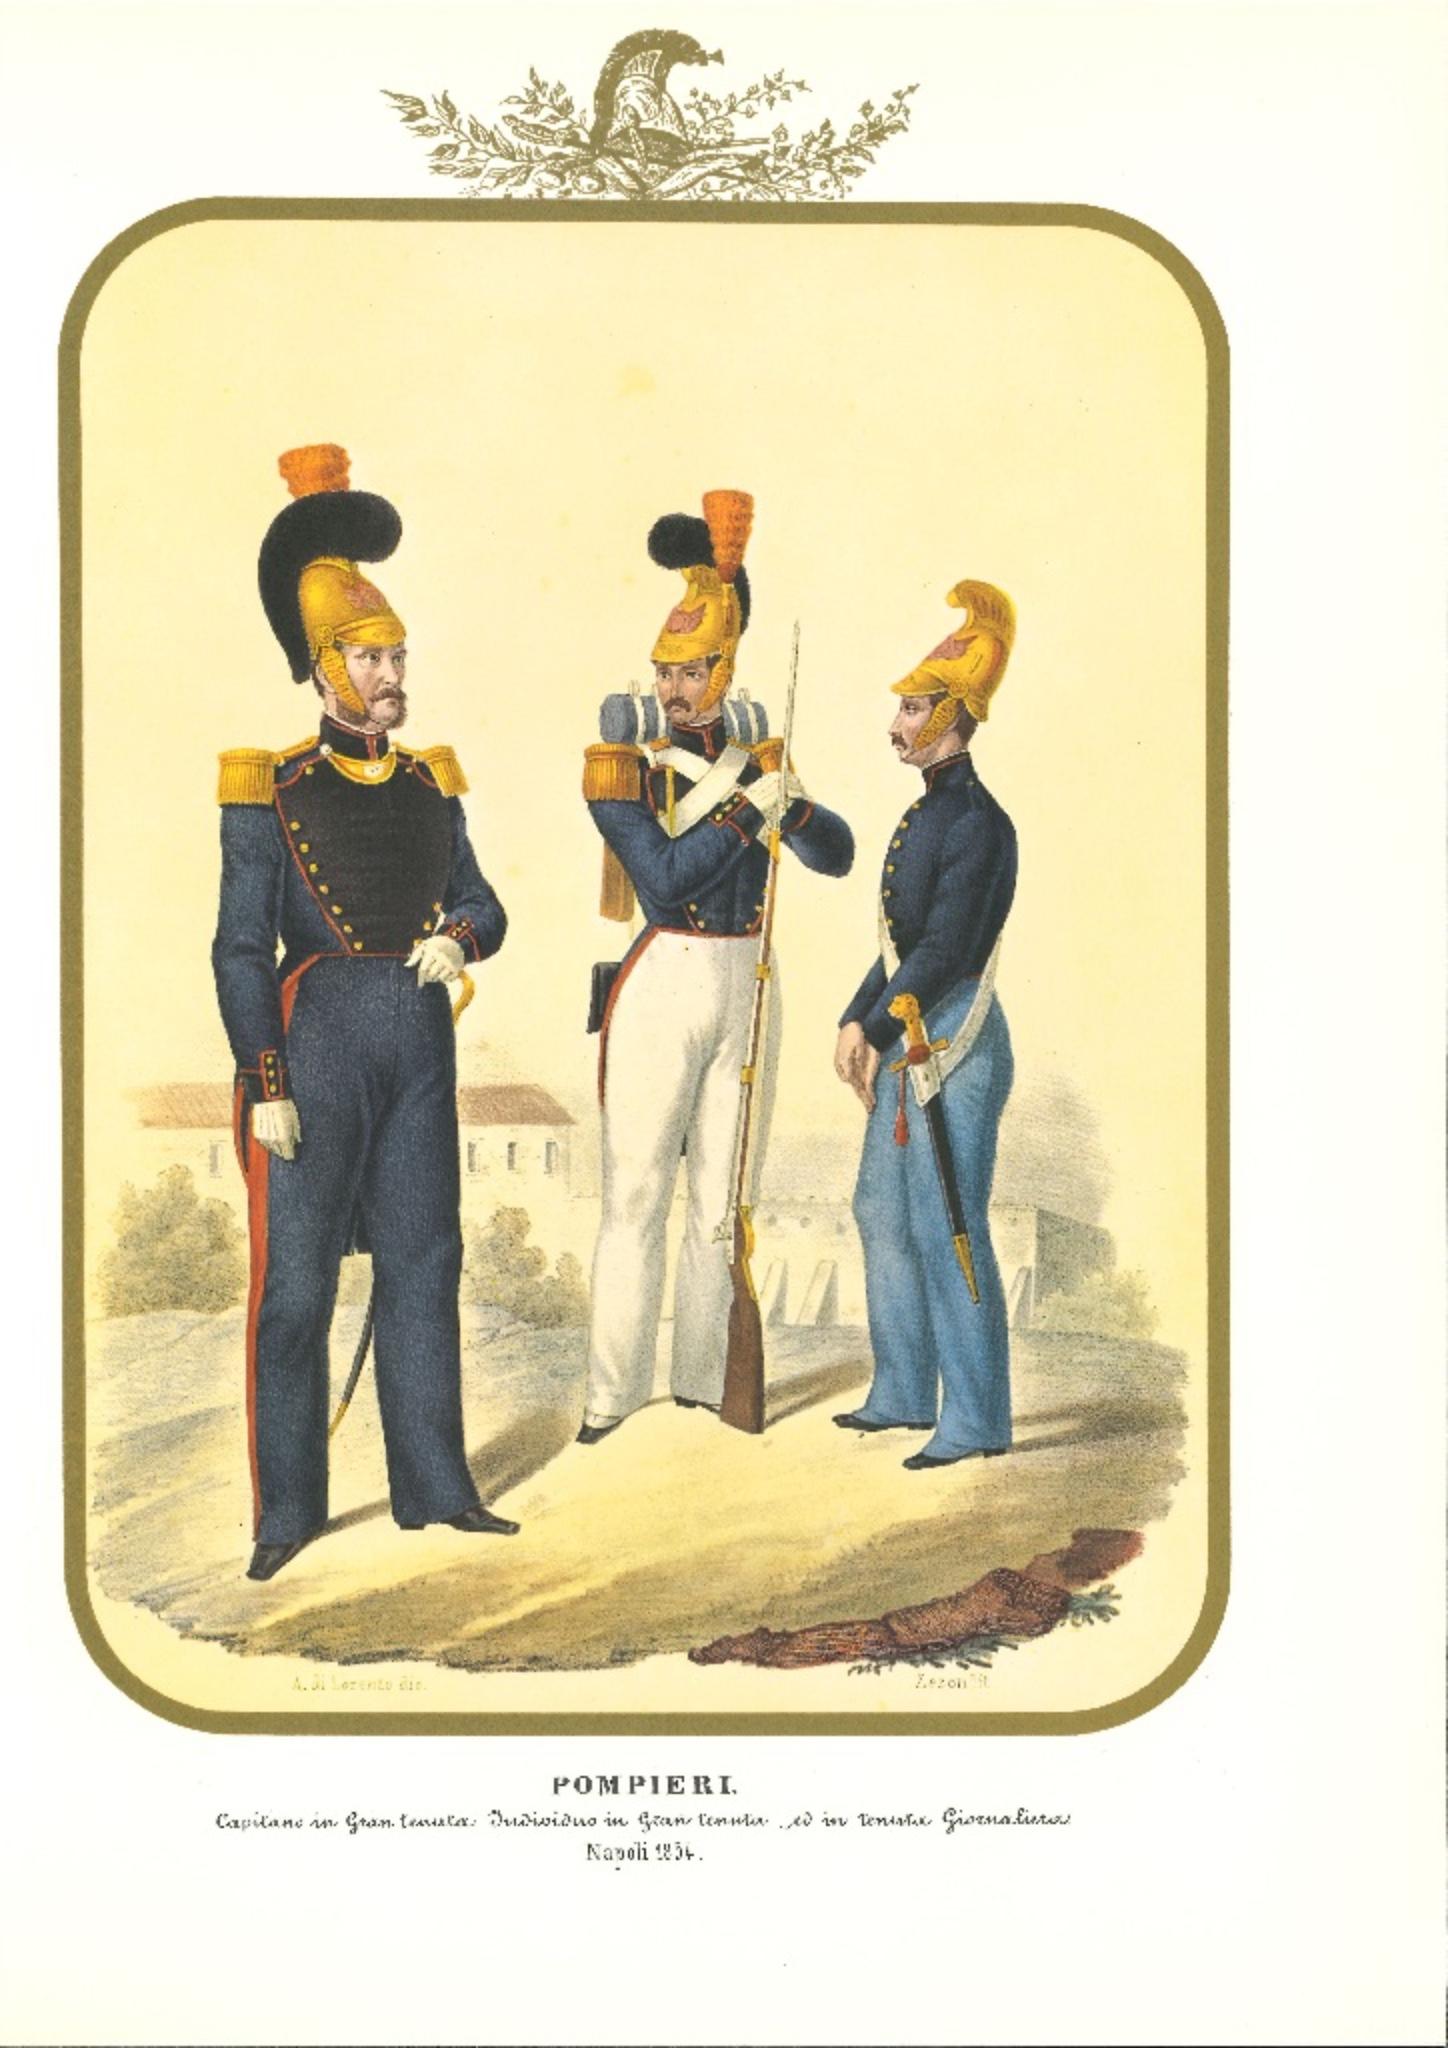 Pompiers est une lithographie d'Antonio Zezon. Naples 1854.

Intéressante lithographie en couleur qui décrit quelques membres de l'armée : à gauche, un capitaine en grande forme ; au centre, un individu en grande forme ; à droite, un individu en